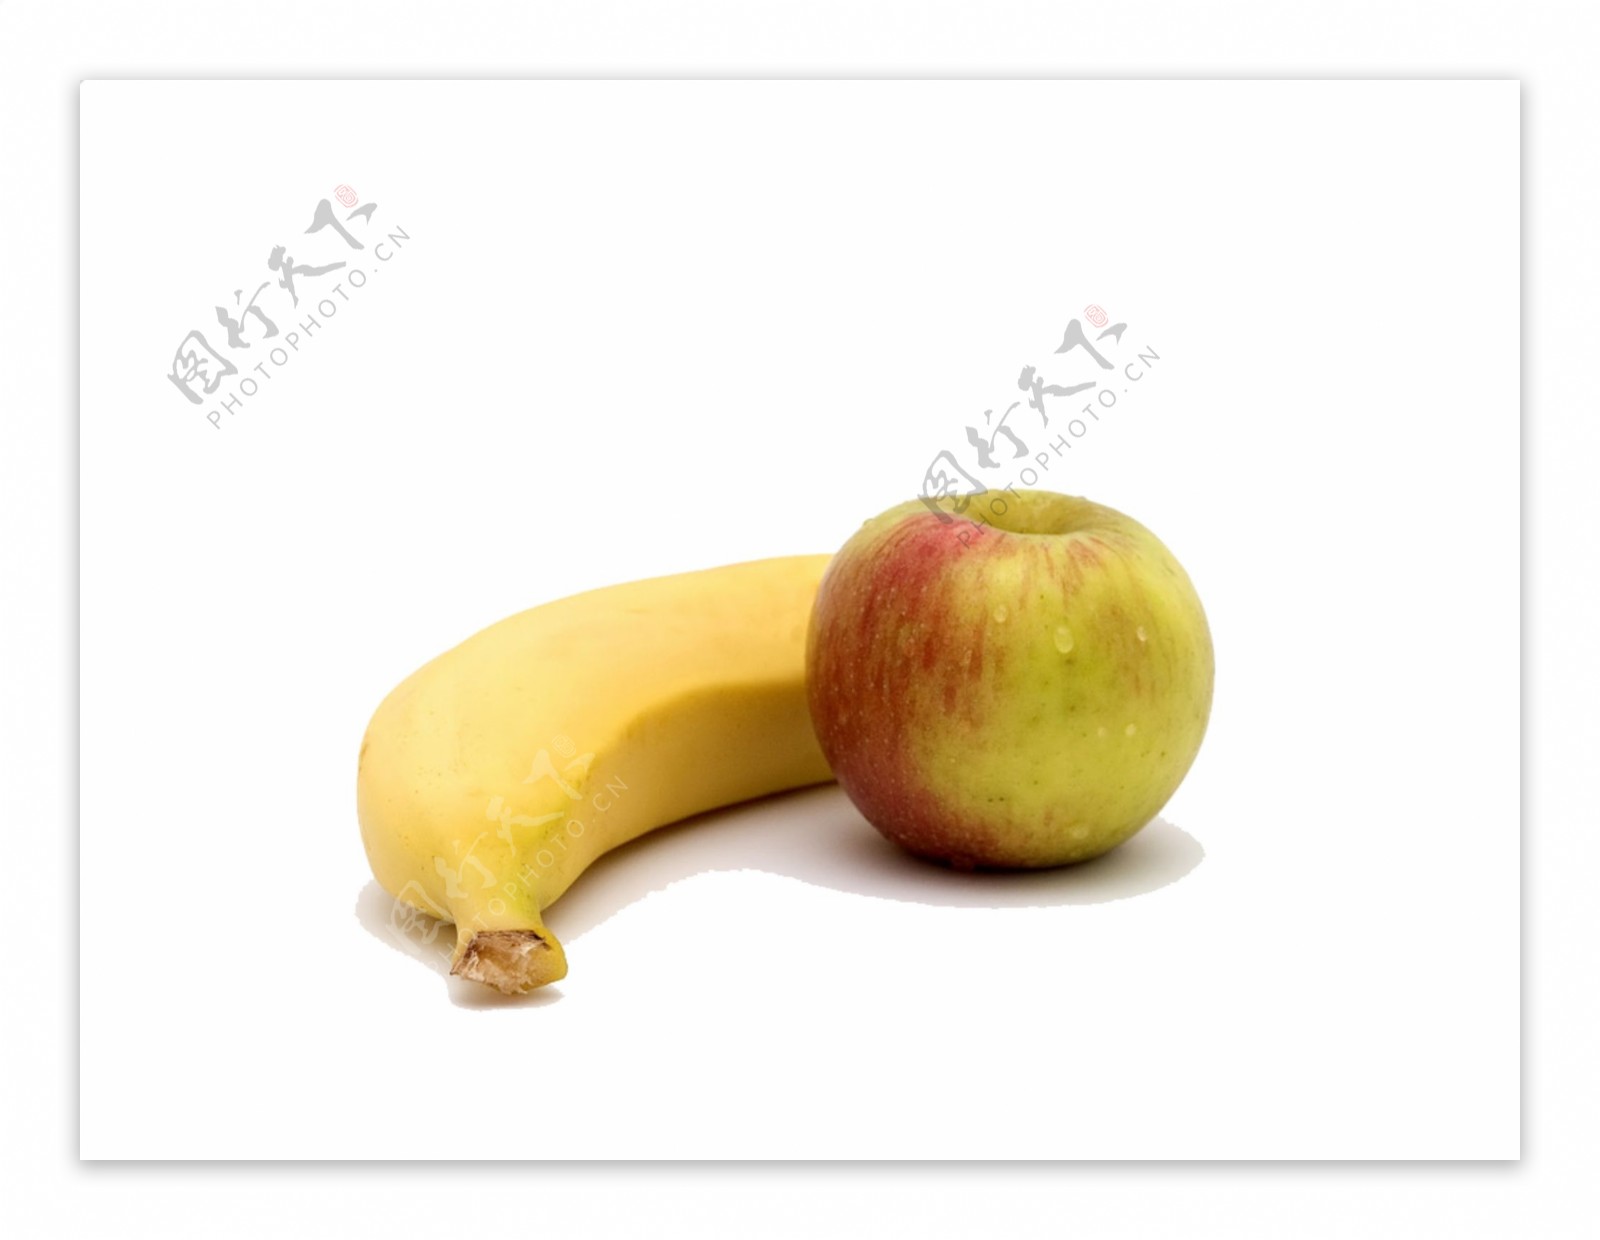 香蕉苹果